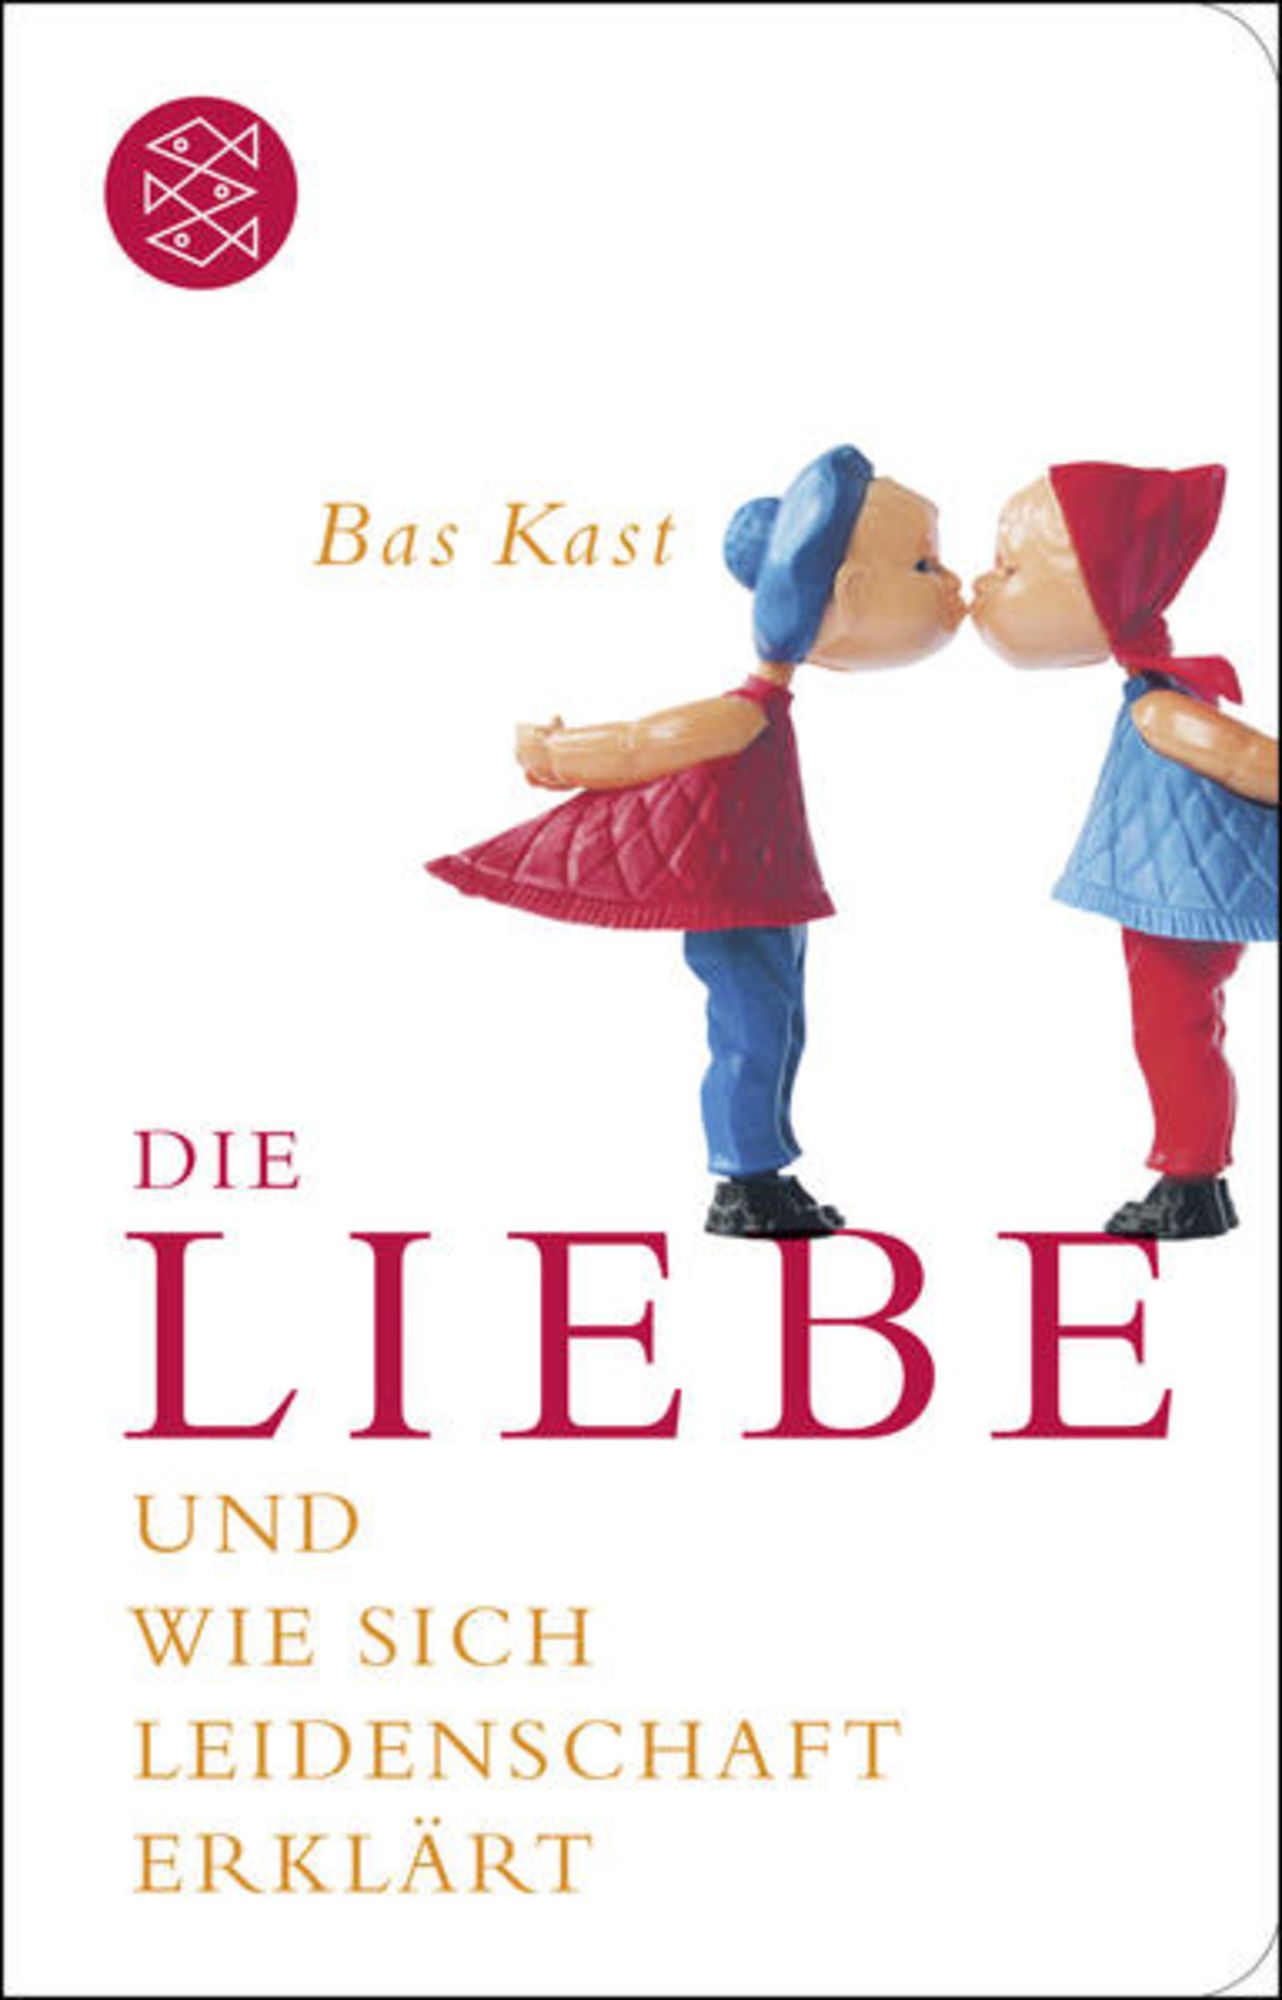 Die Liebe' von 'Bas Kast' - Buch - '978-3-596-52124-1